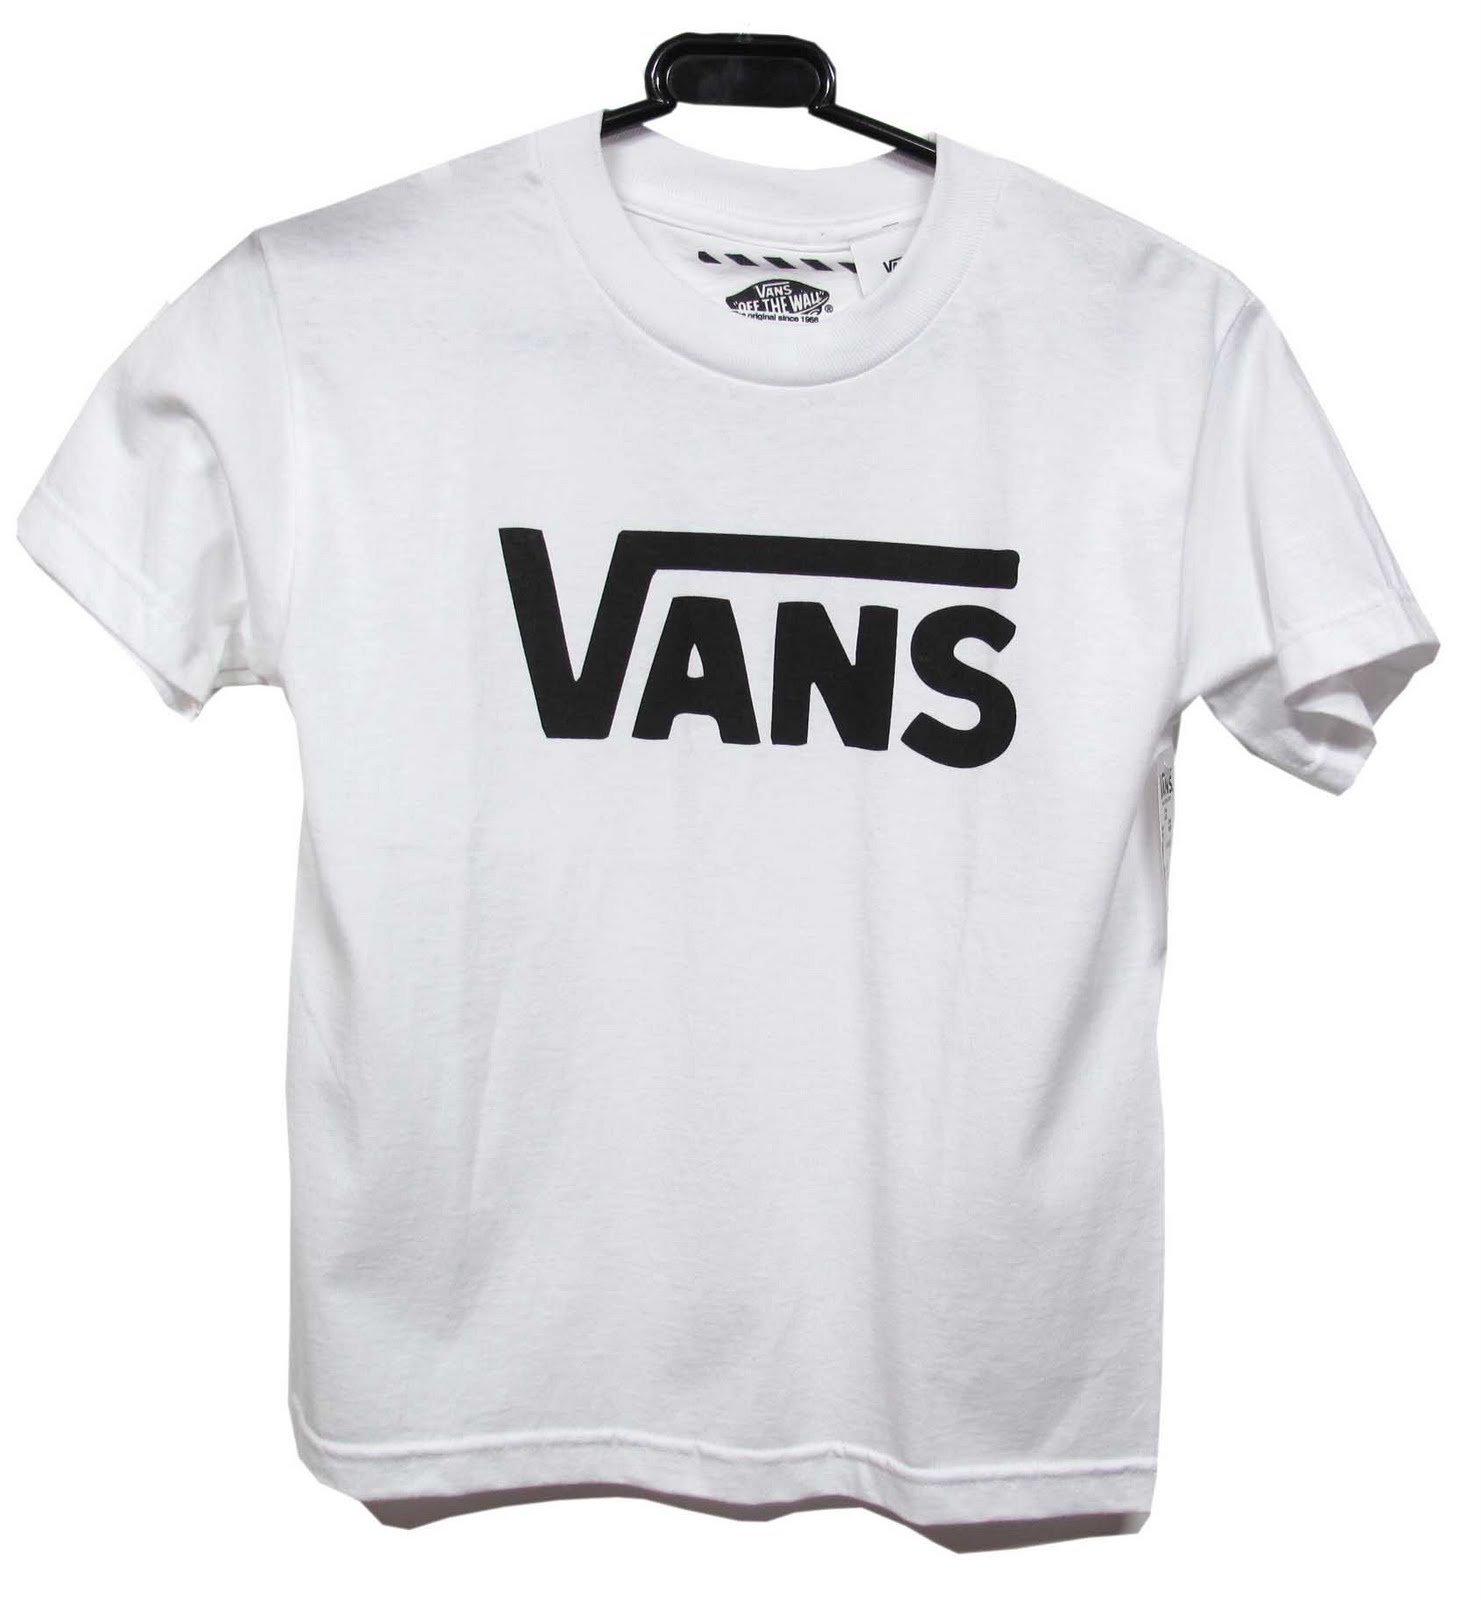 Landau Online: Vans Kids Clothing